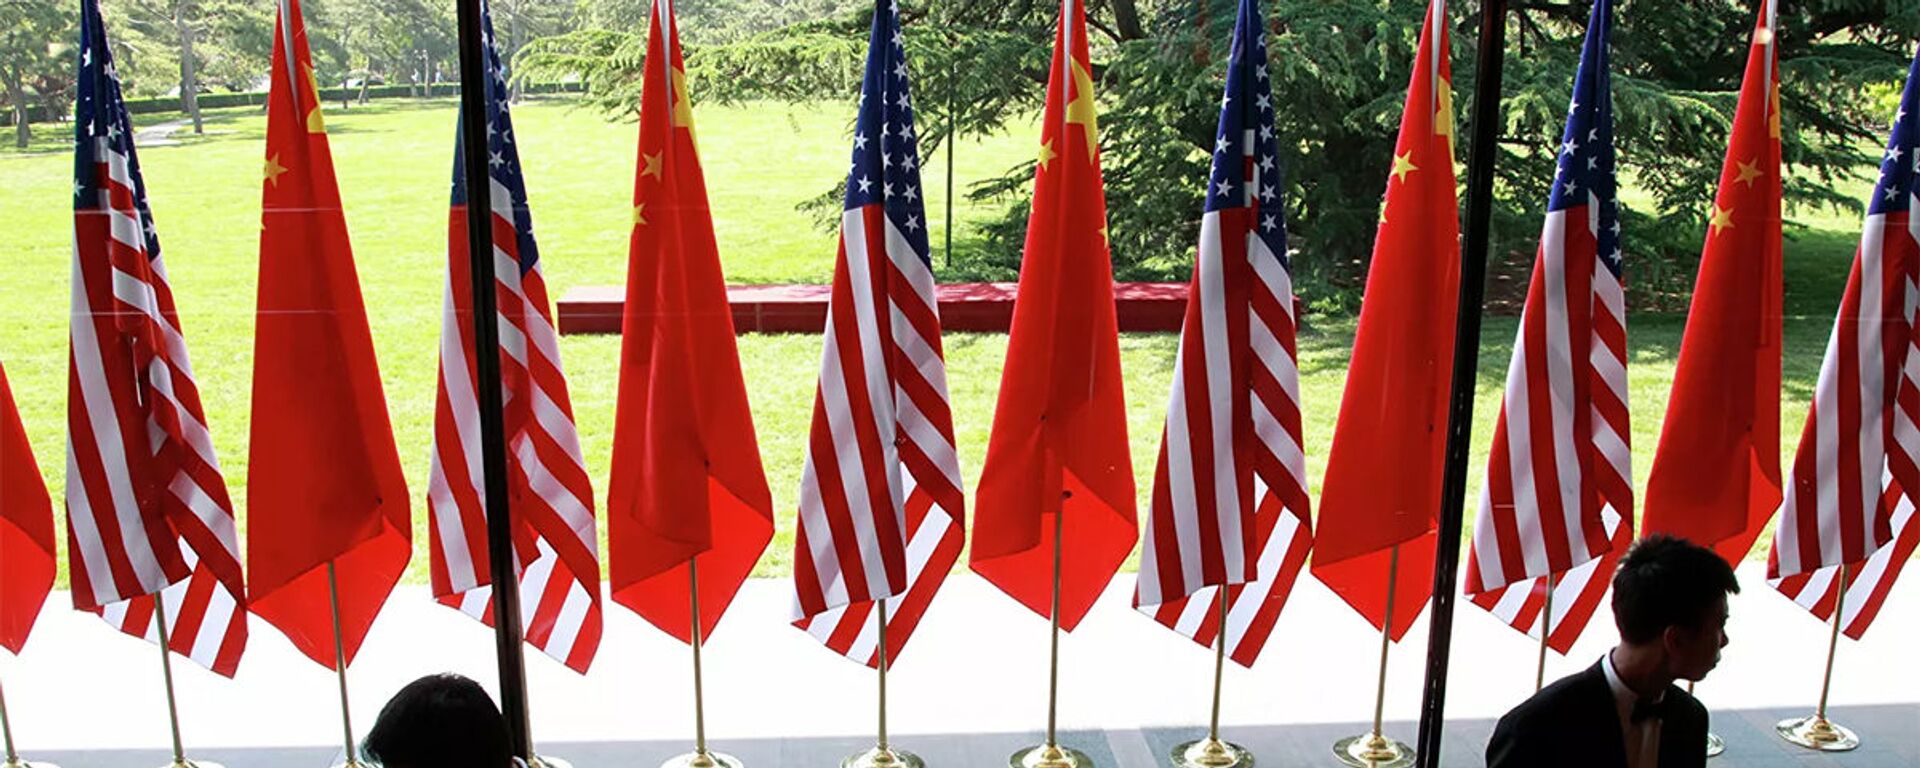 Cờ của Trung Quốc và Hoa Kỳ tại lễ khai mạc Đối thoại chiến lược và kinh tế Mỹ-Trung tại Bắc Kinh - Sputnik Việt Nam, 1920, 12.10.2021